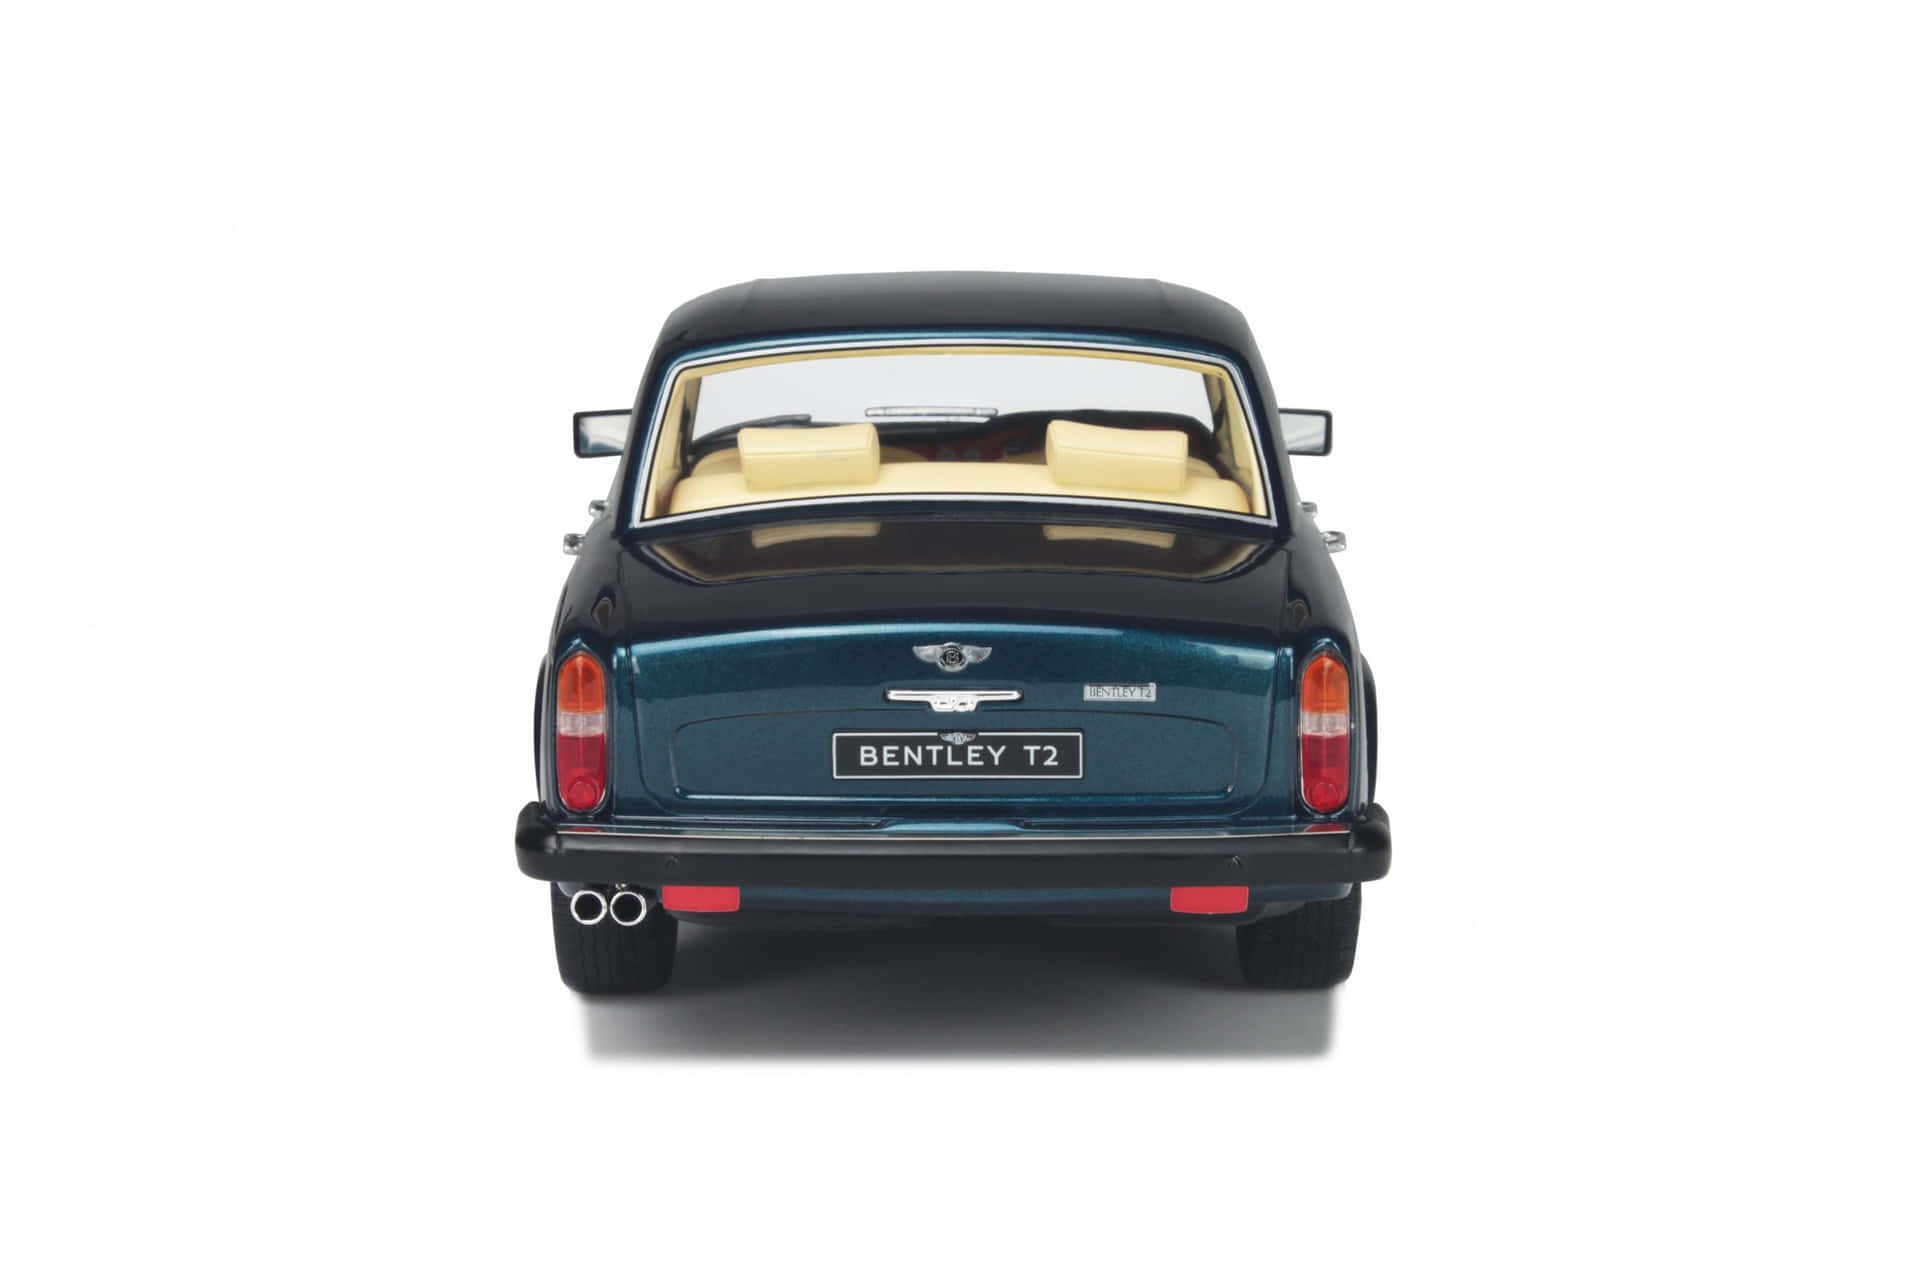 Bentley T2 Classic Luxury Car Wallpaper